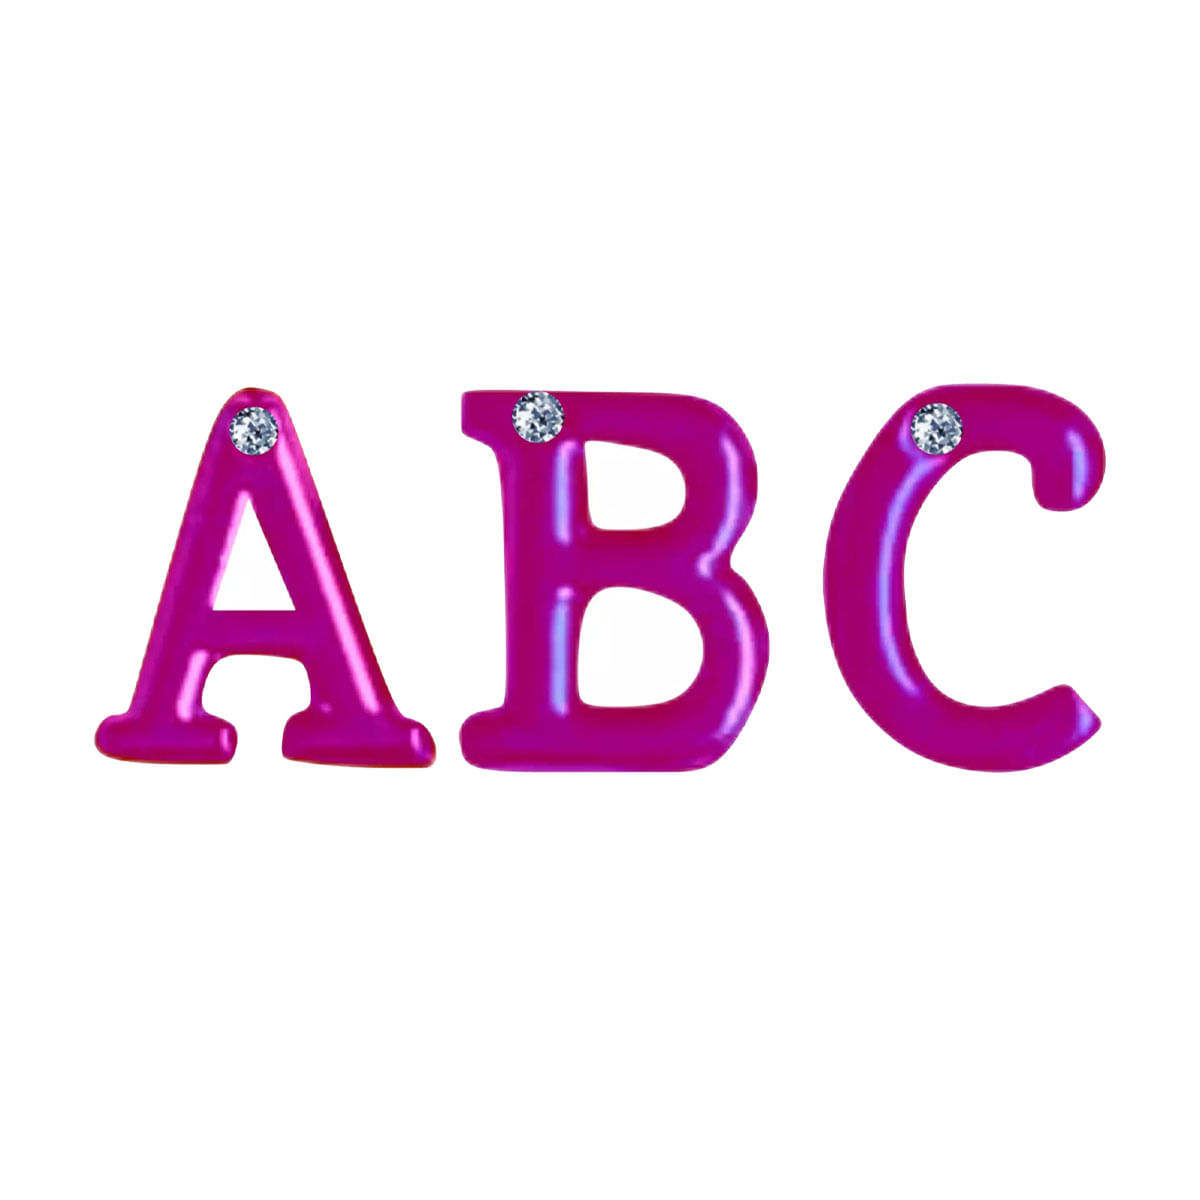 Letras em Metal Rosa com Strass para Personalização do Plug ABC Hard